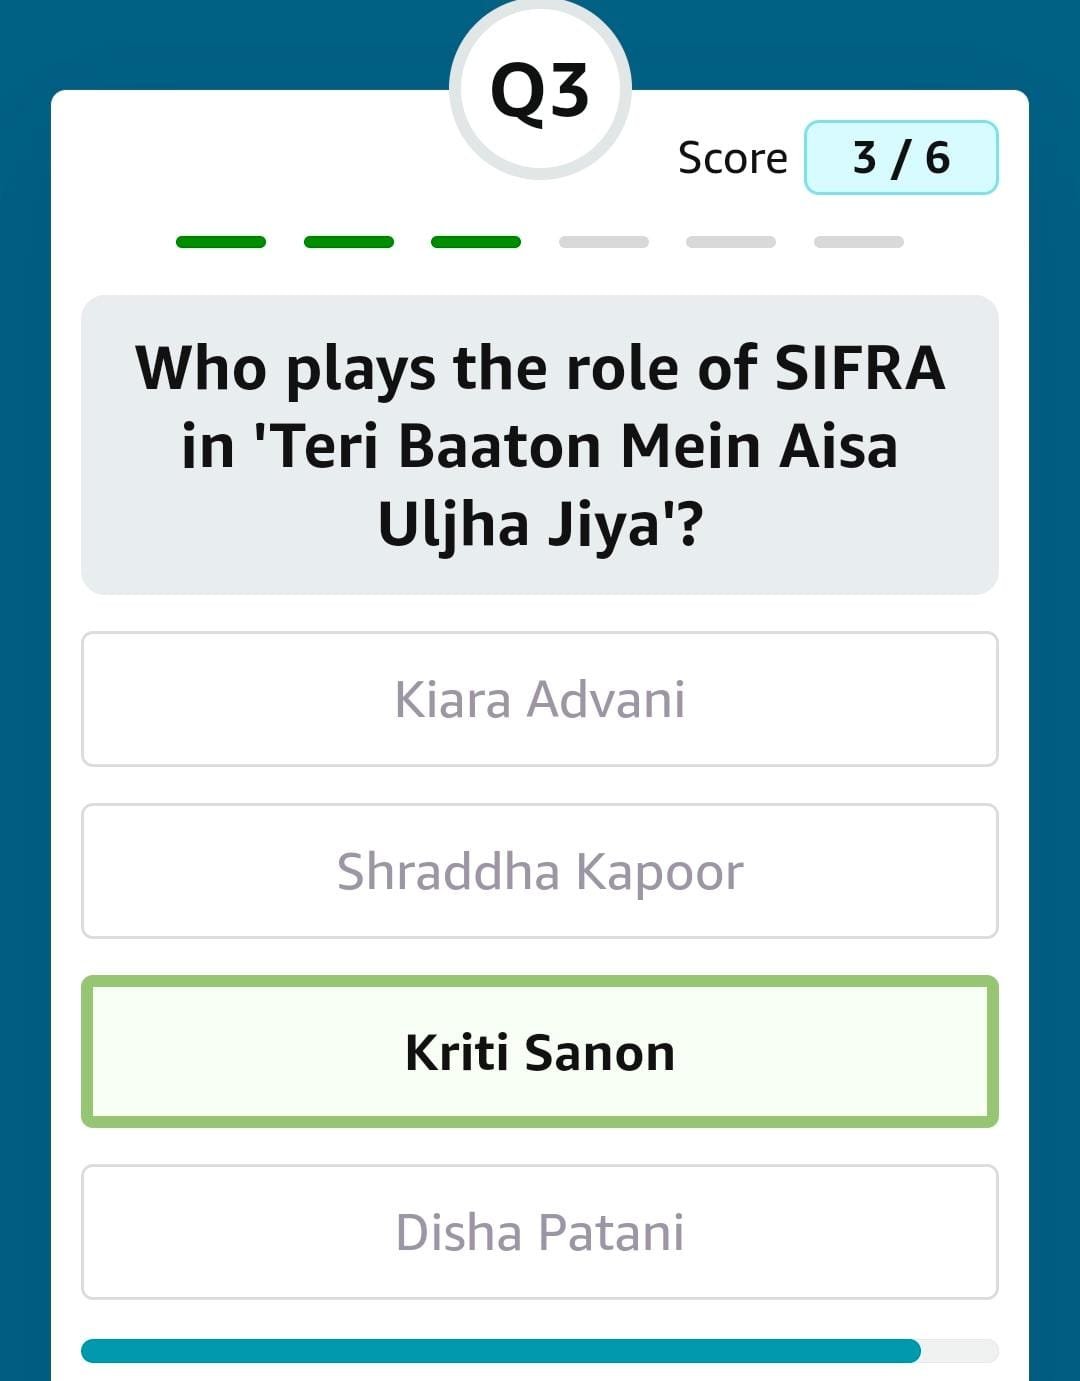 Who plays the role of SIFRA in 'Teri Baaton Mein Aisa Uljha Jiya'?